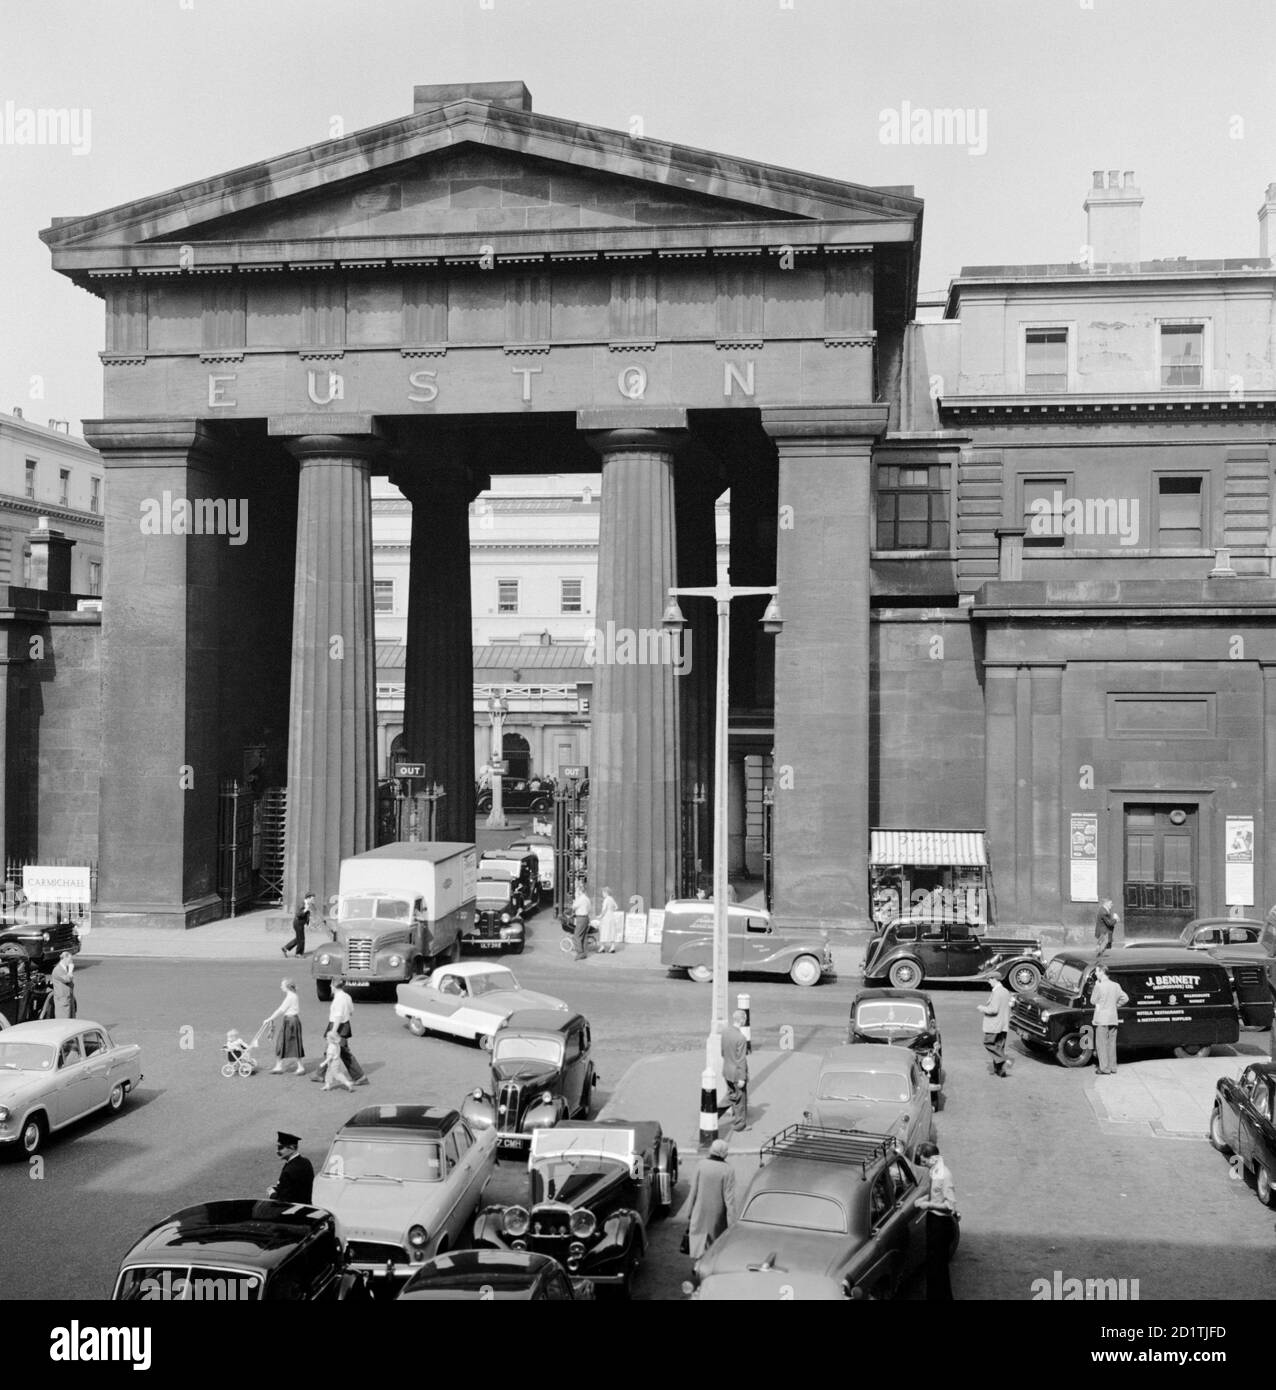 EUSTON ARCH, Euston Station, Euston Road, Camden Town, Londres. Circulation à l'extérieur de l'Euston Arch. L'arche a été conçue par Philip Hardwick en 1837 dans le cadre d'un écran et portique autour de la piste de la station. Il a été démoli en 1963. Photographié en 1960 par Eric de Mare. Banque D'Images